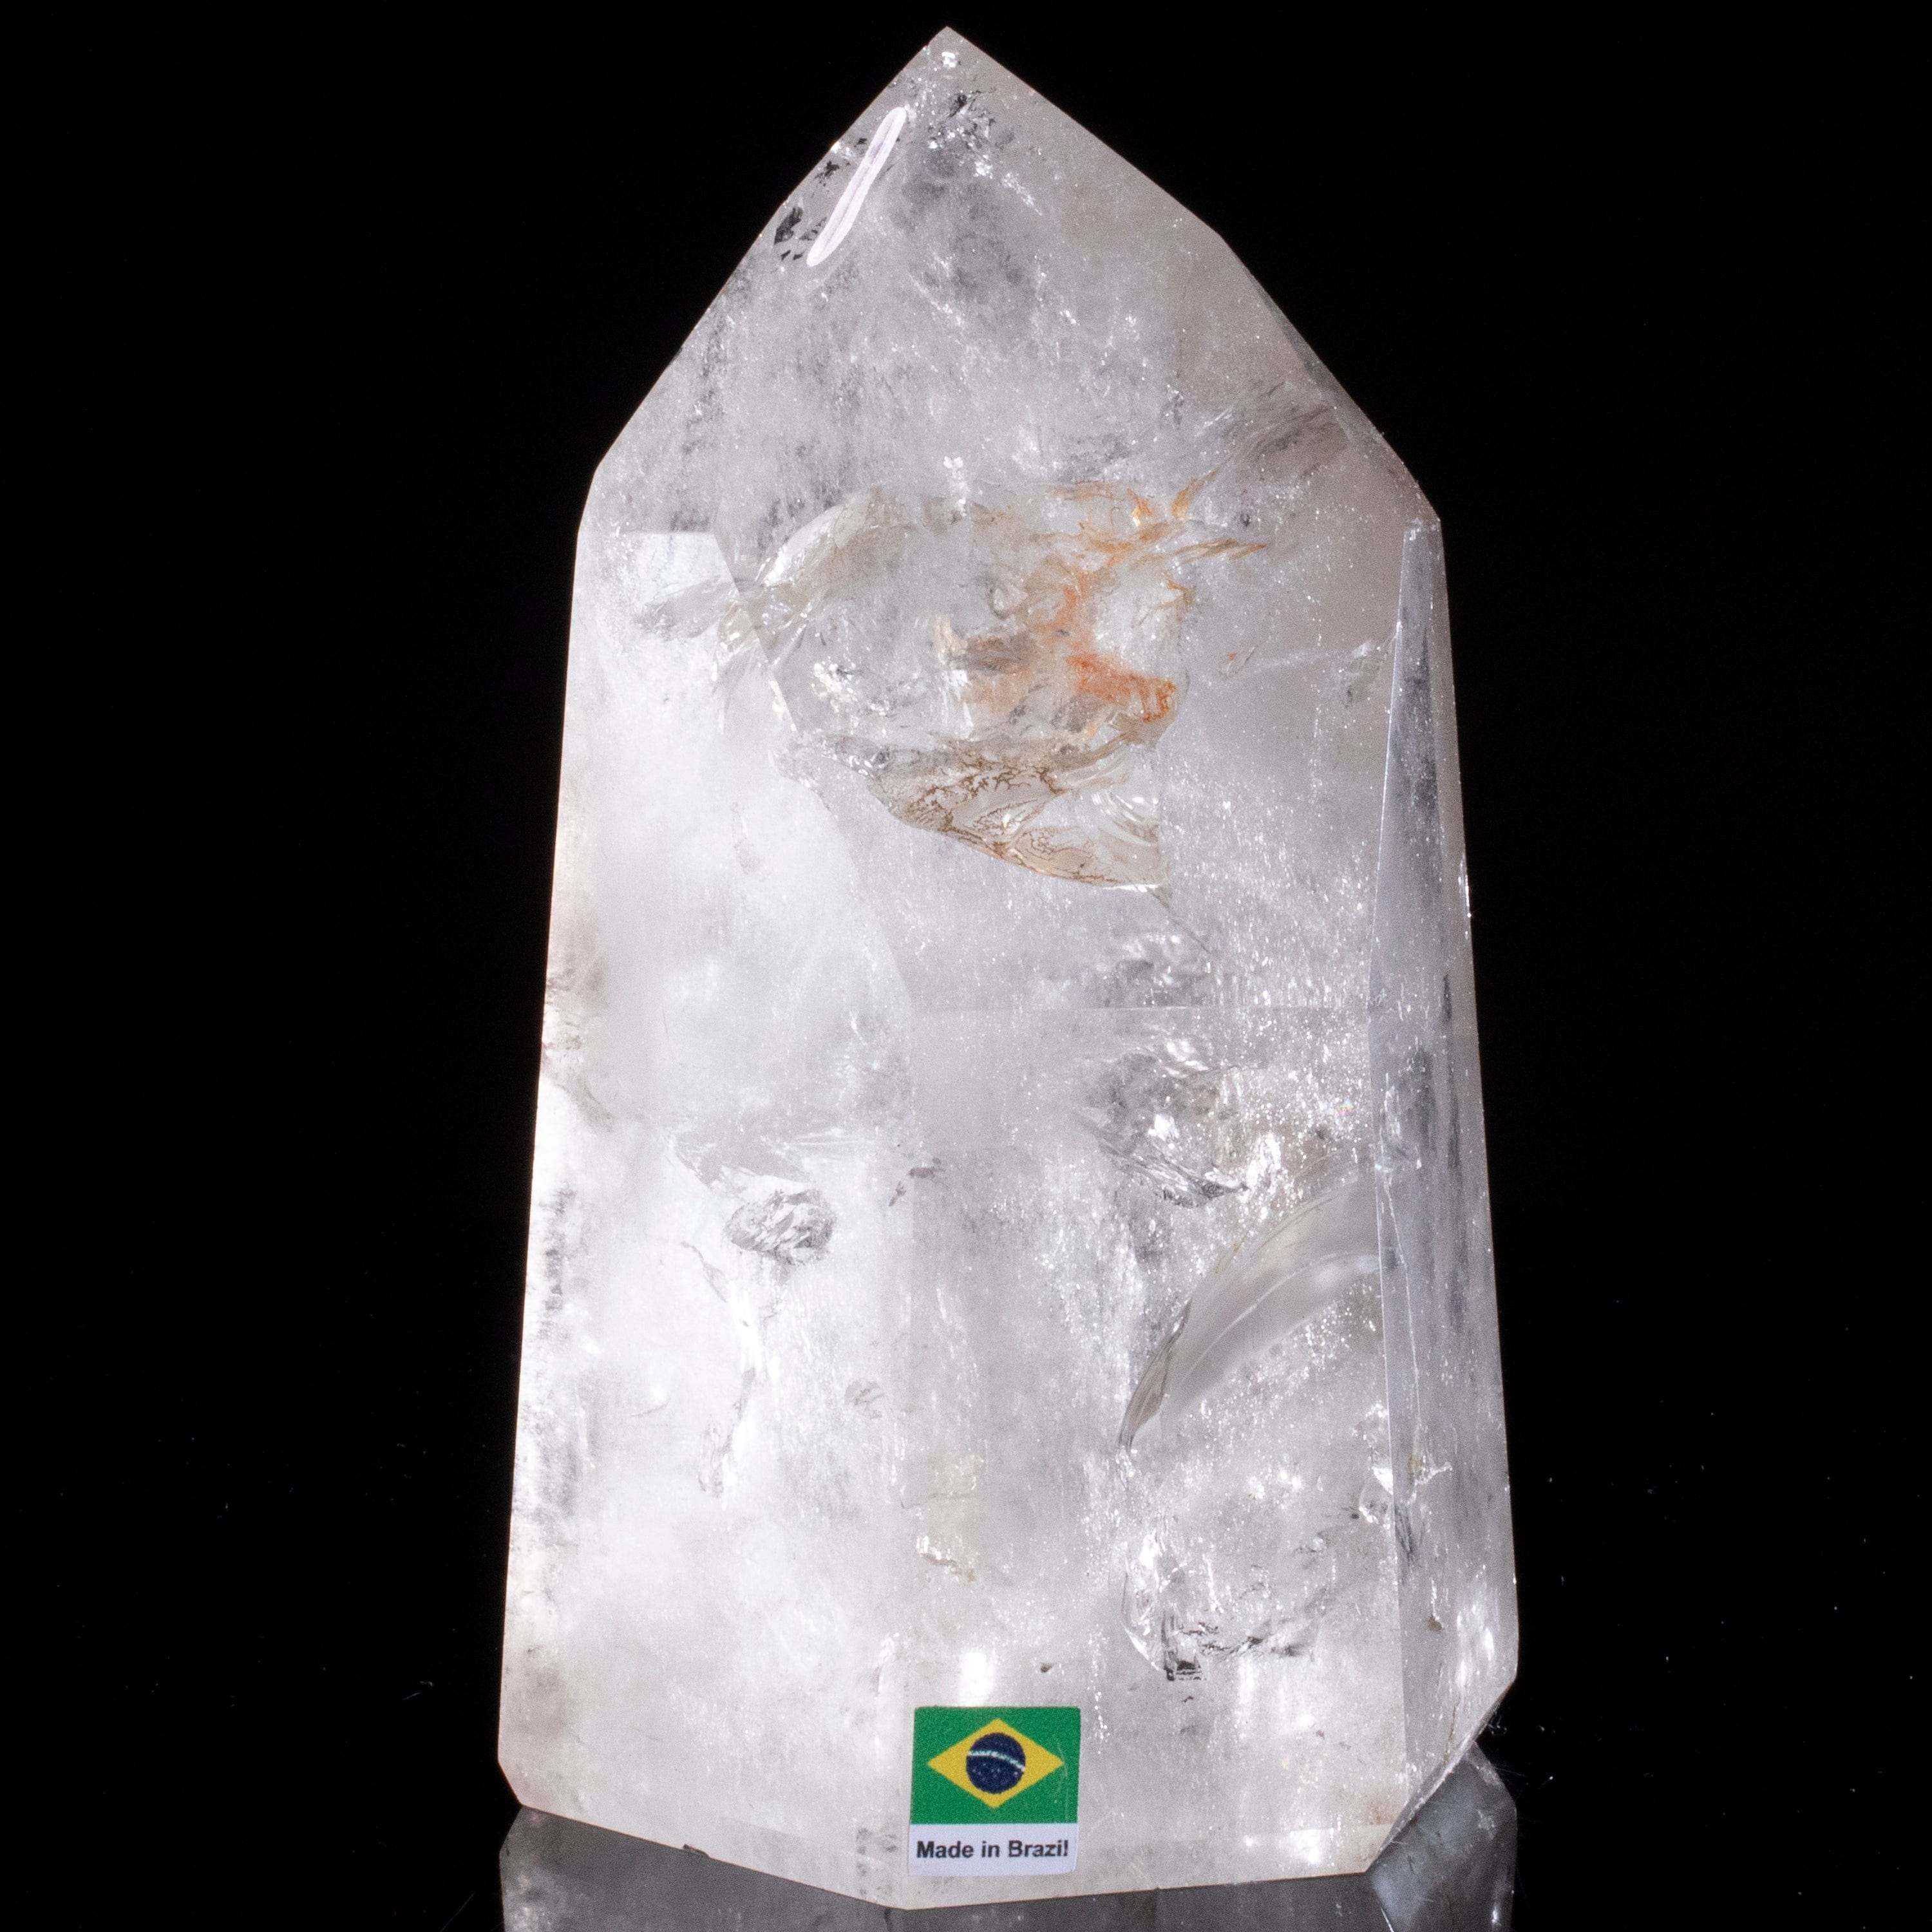 Kalifano Quartz Natural Quartz Obelisk from Brazil - 6.5" / 1,702 grams QZ2400.015